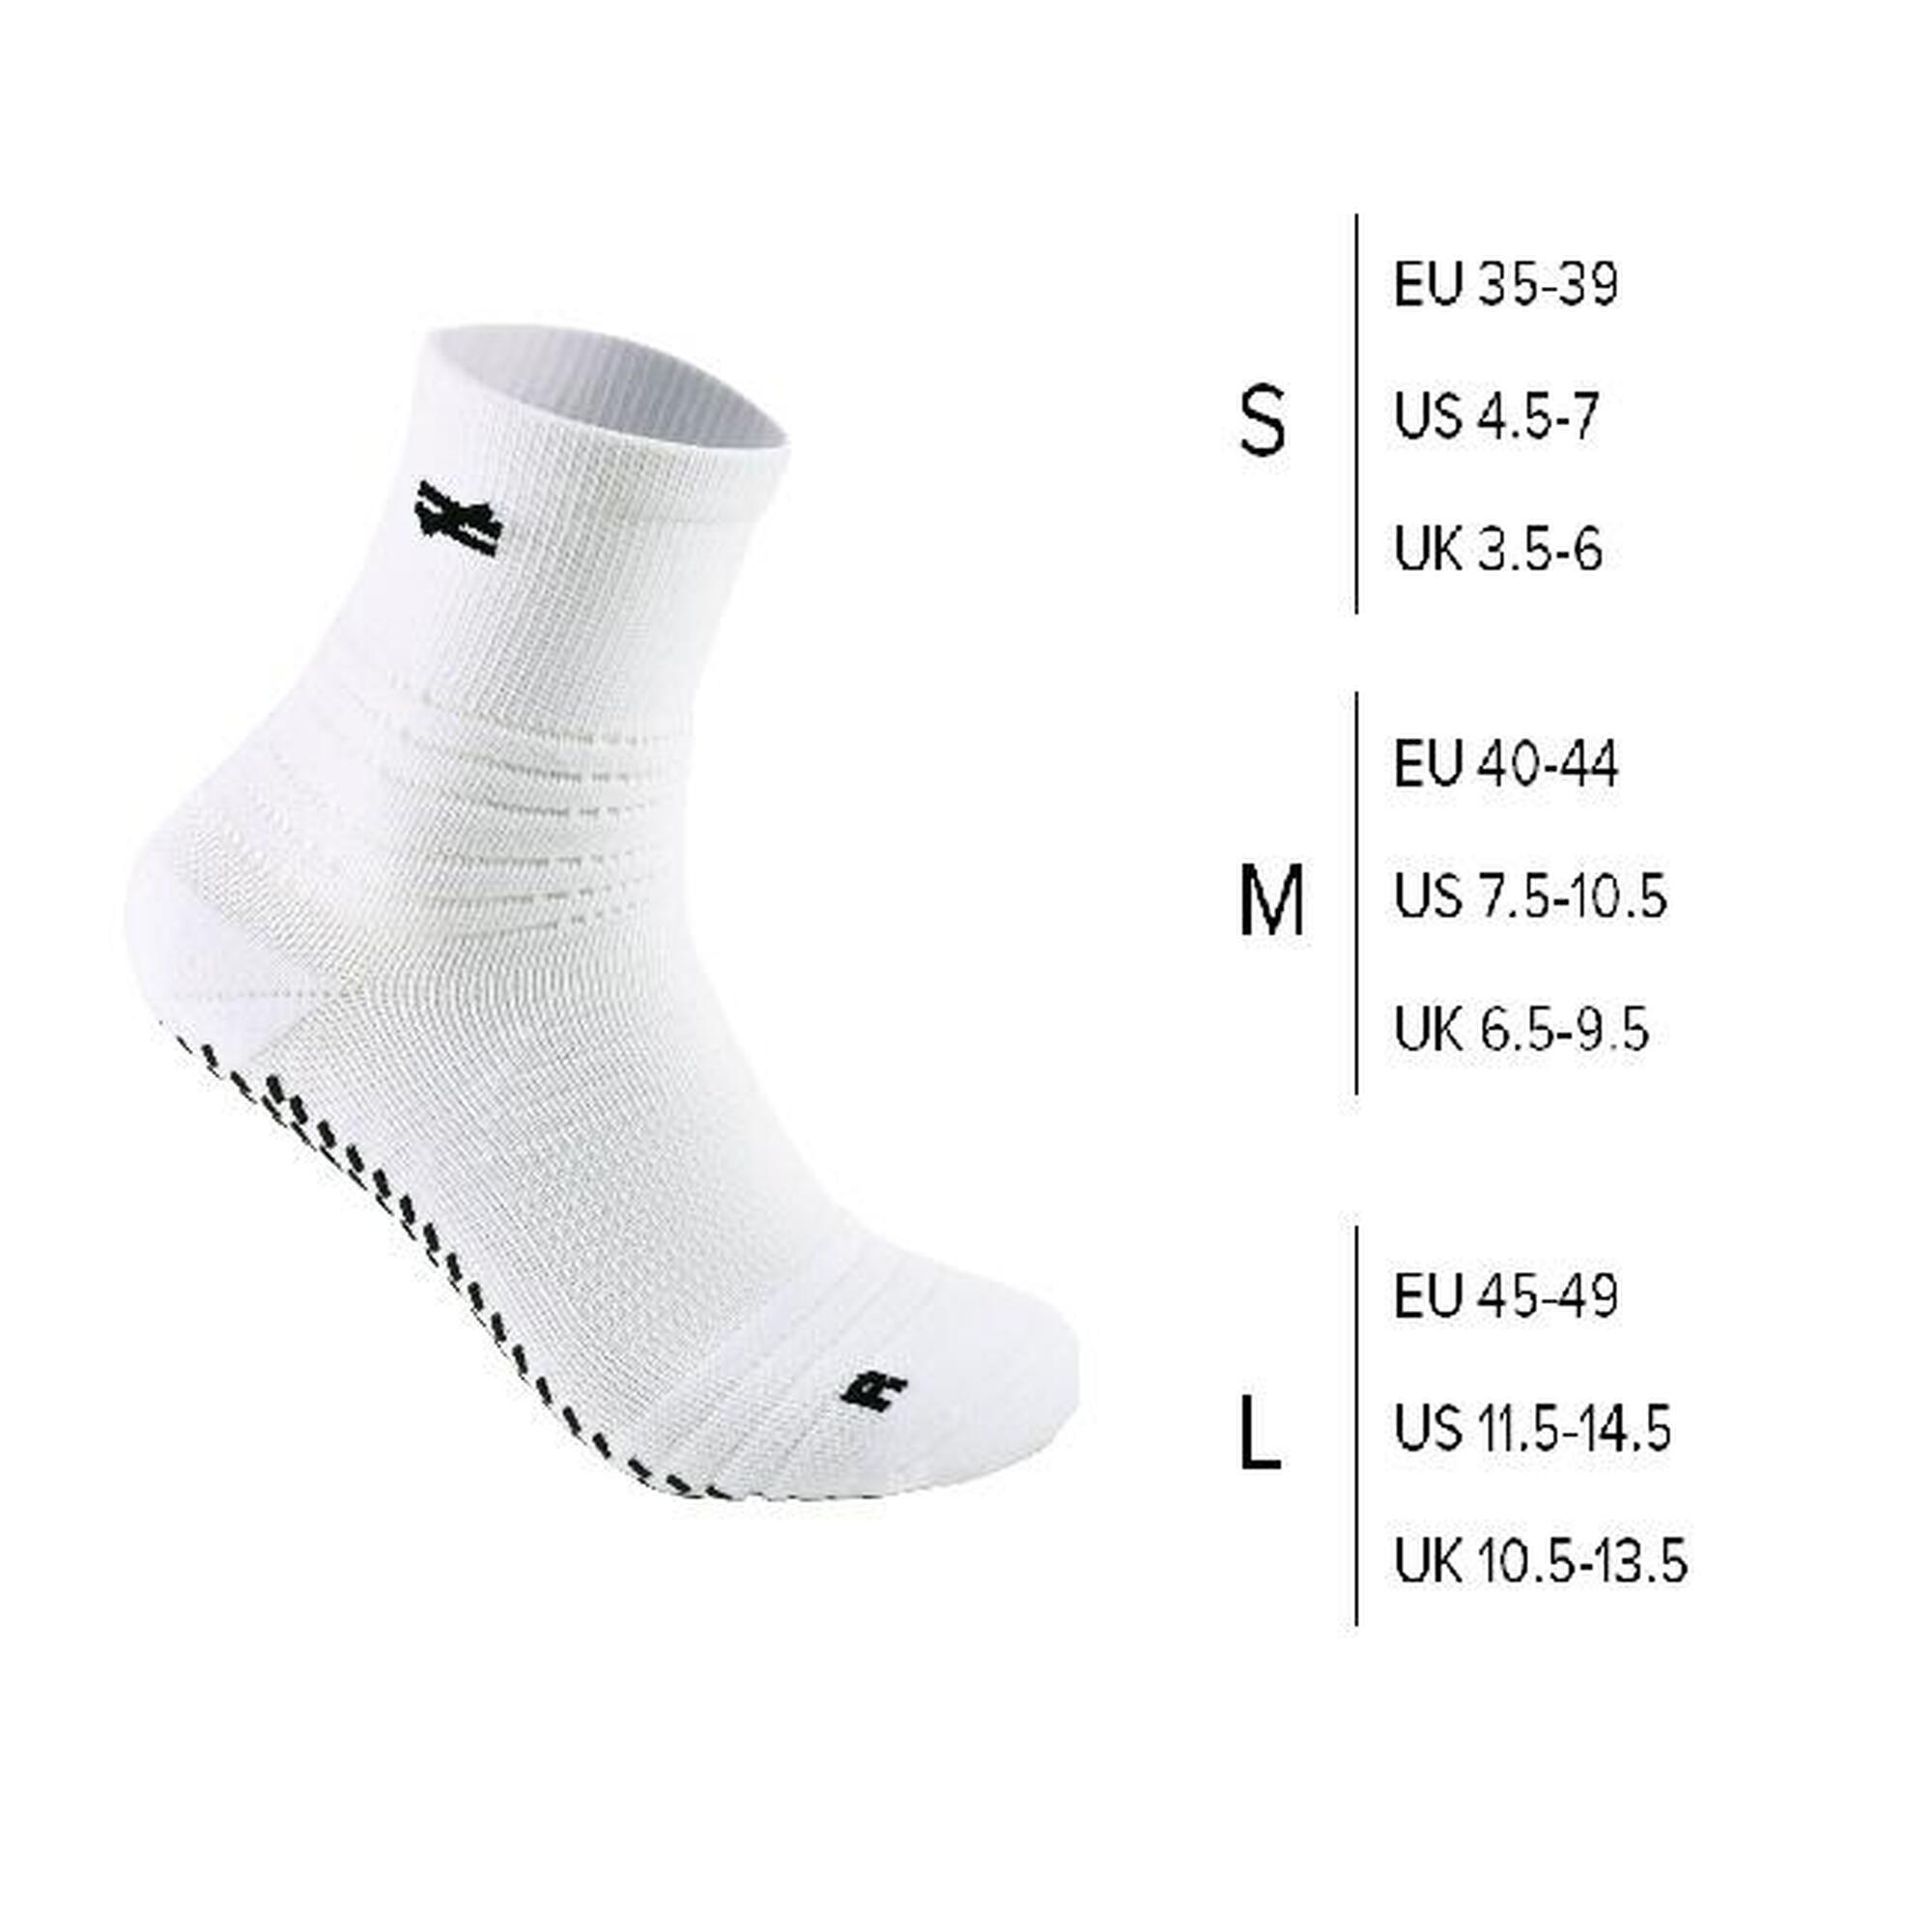 G-ZOX Enhance Grip Socks 足球防滑襪 3 對裝 (黑色 x 3)